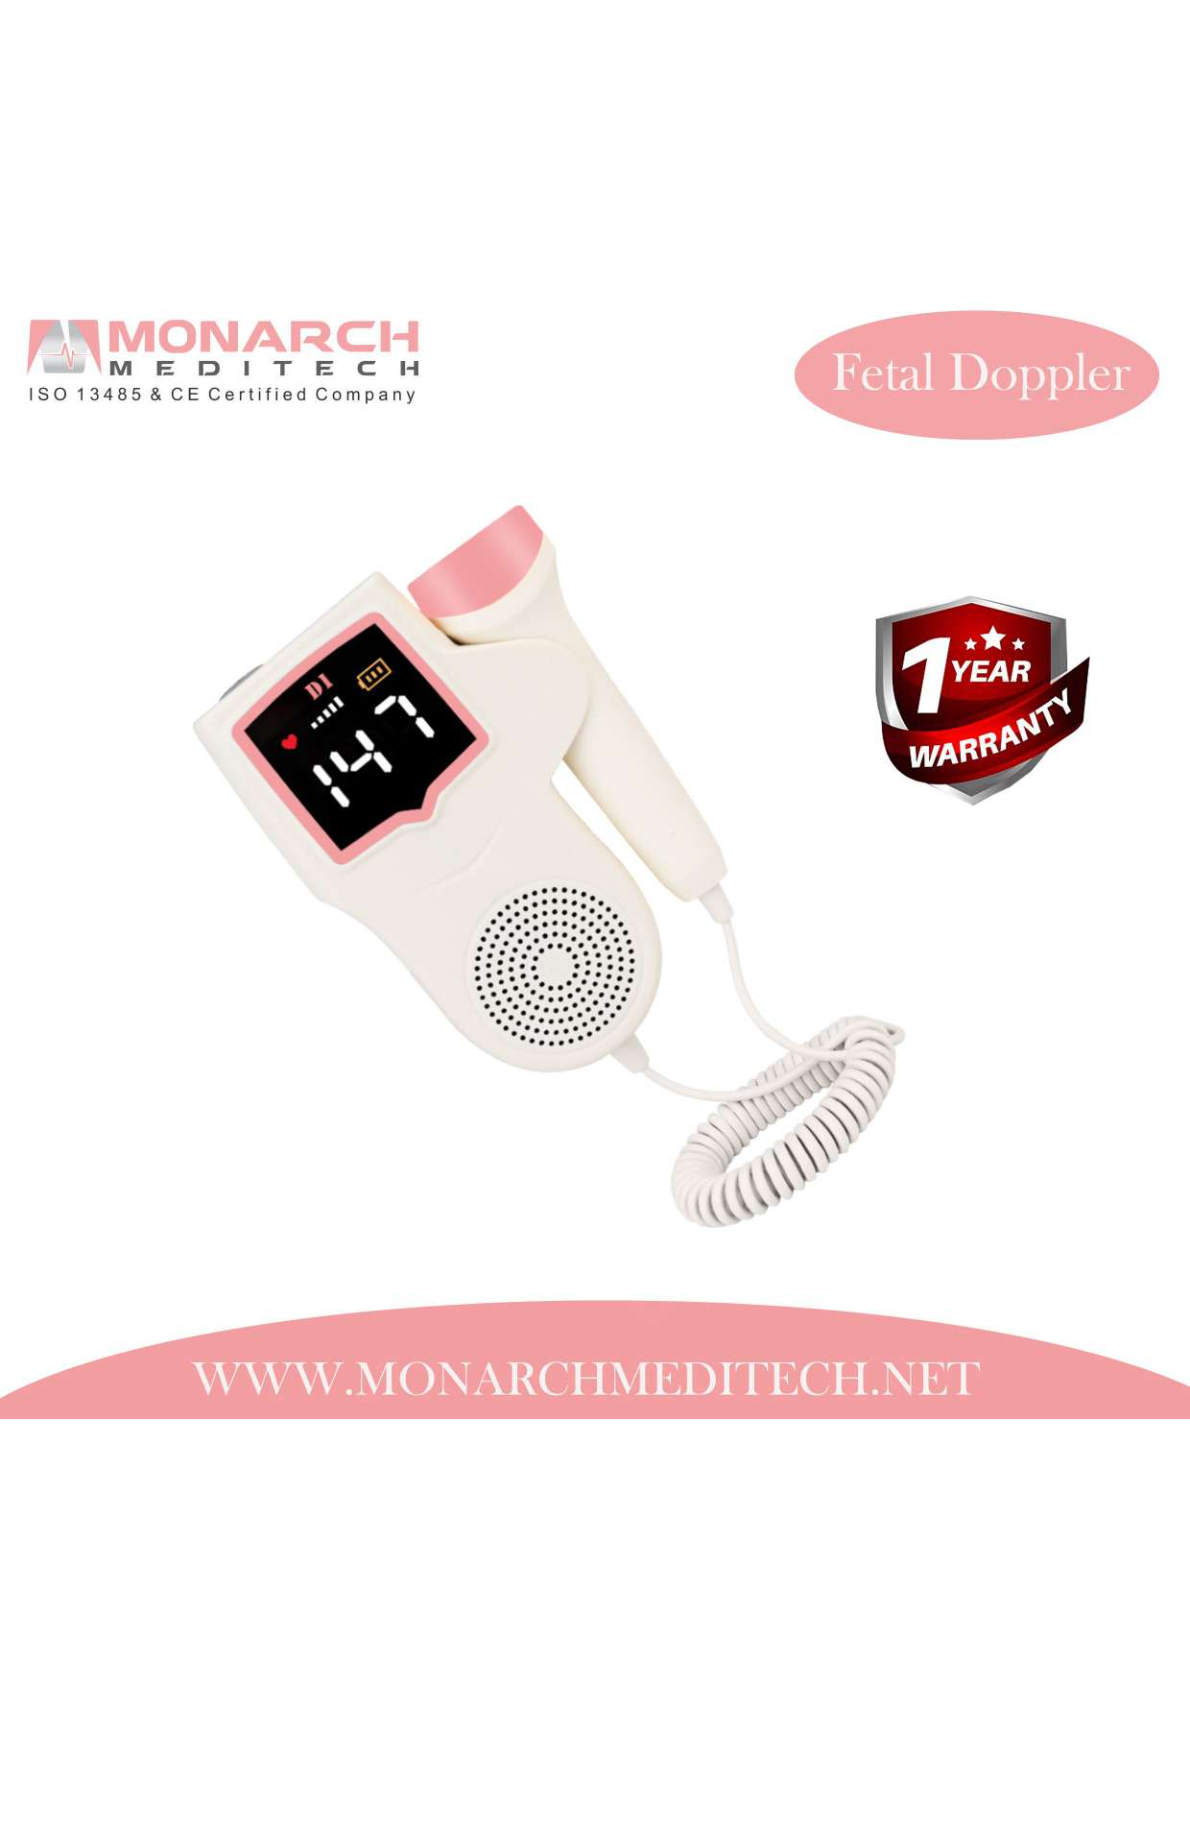 Handheld Digital Fetal Doppler